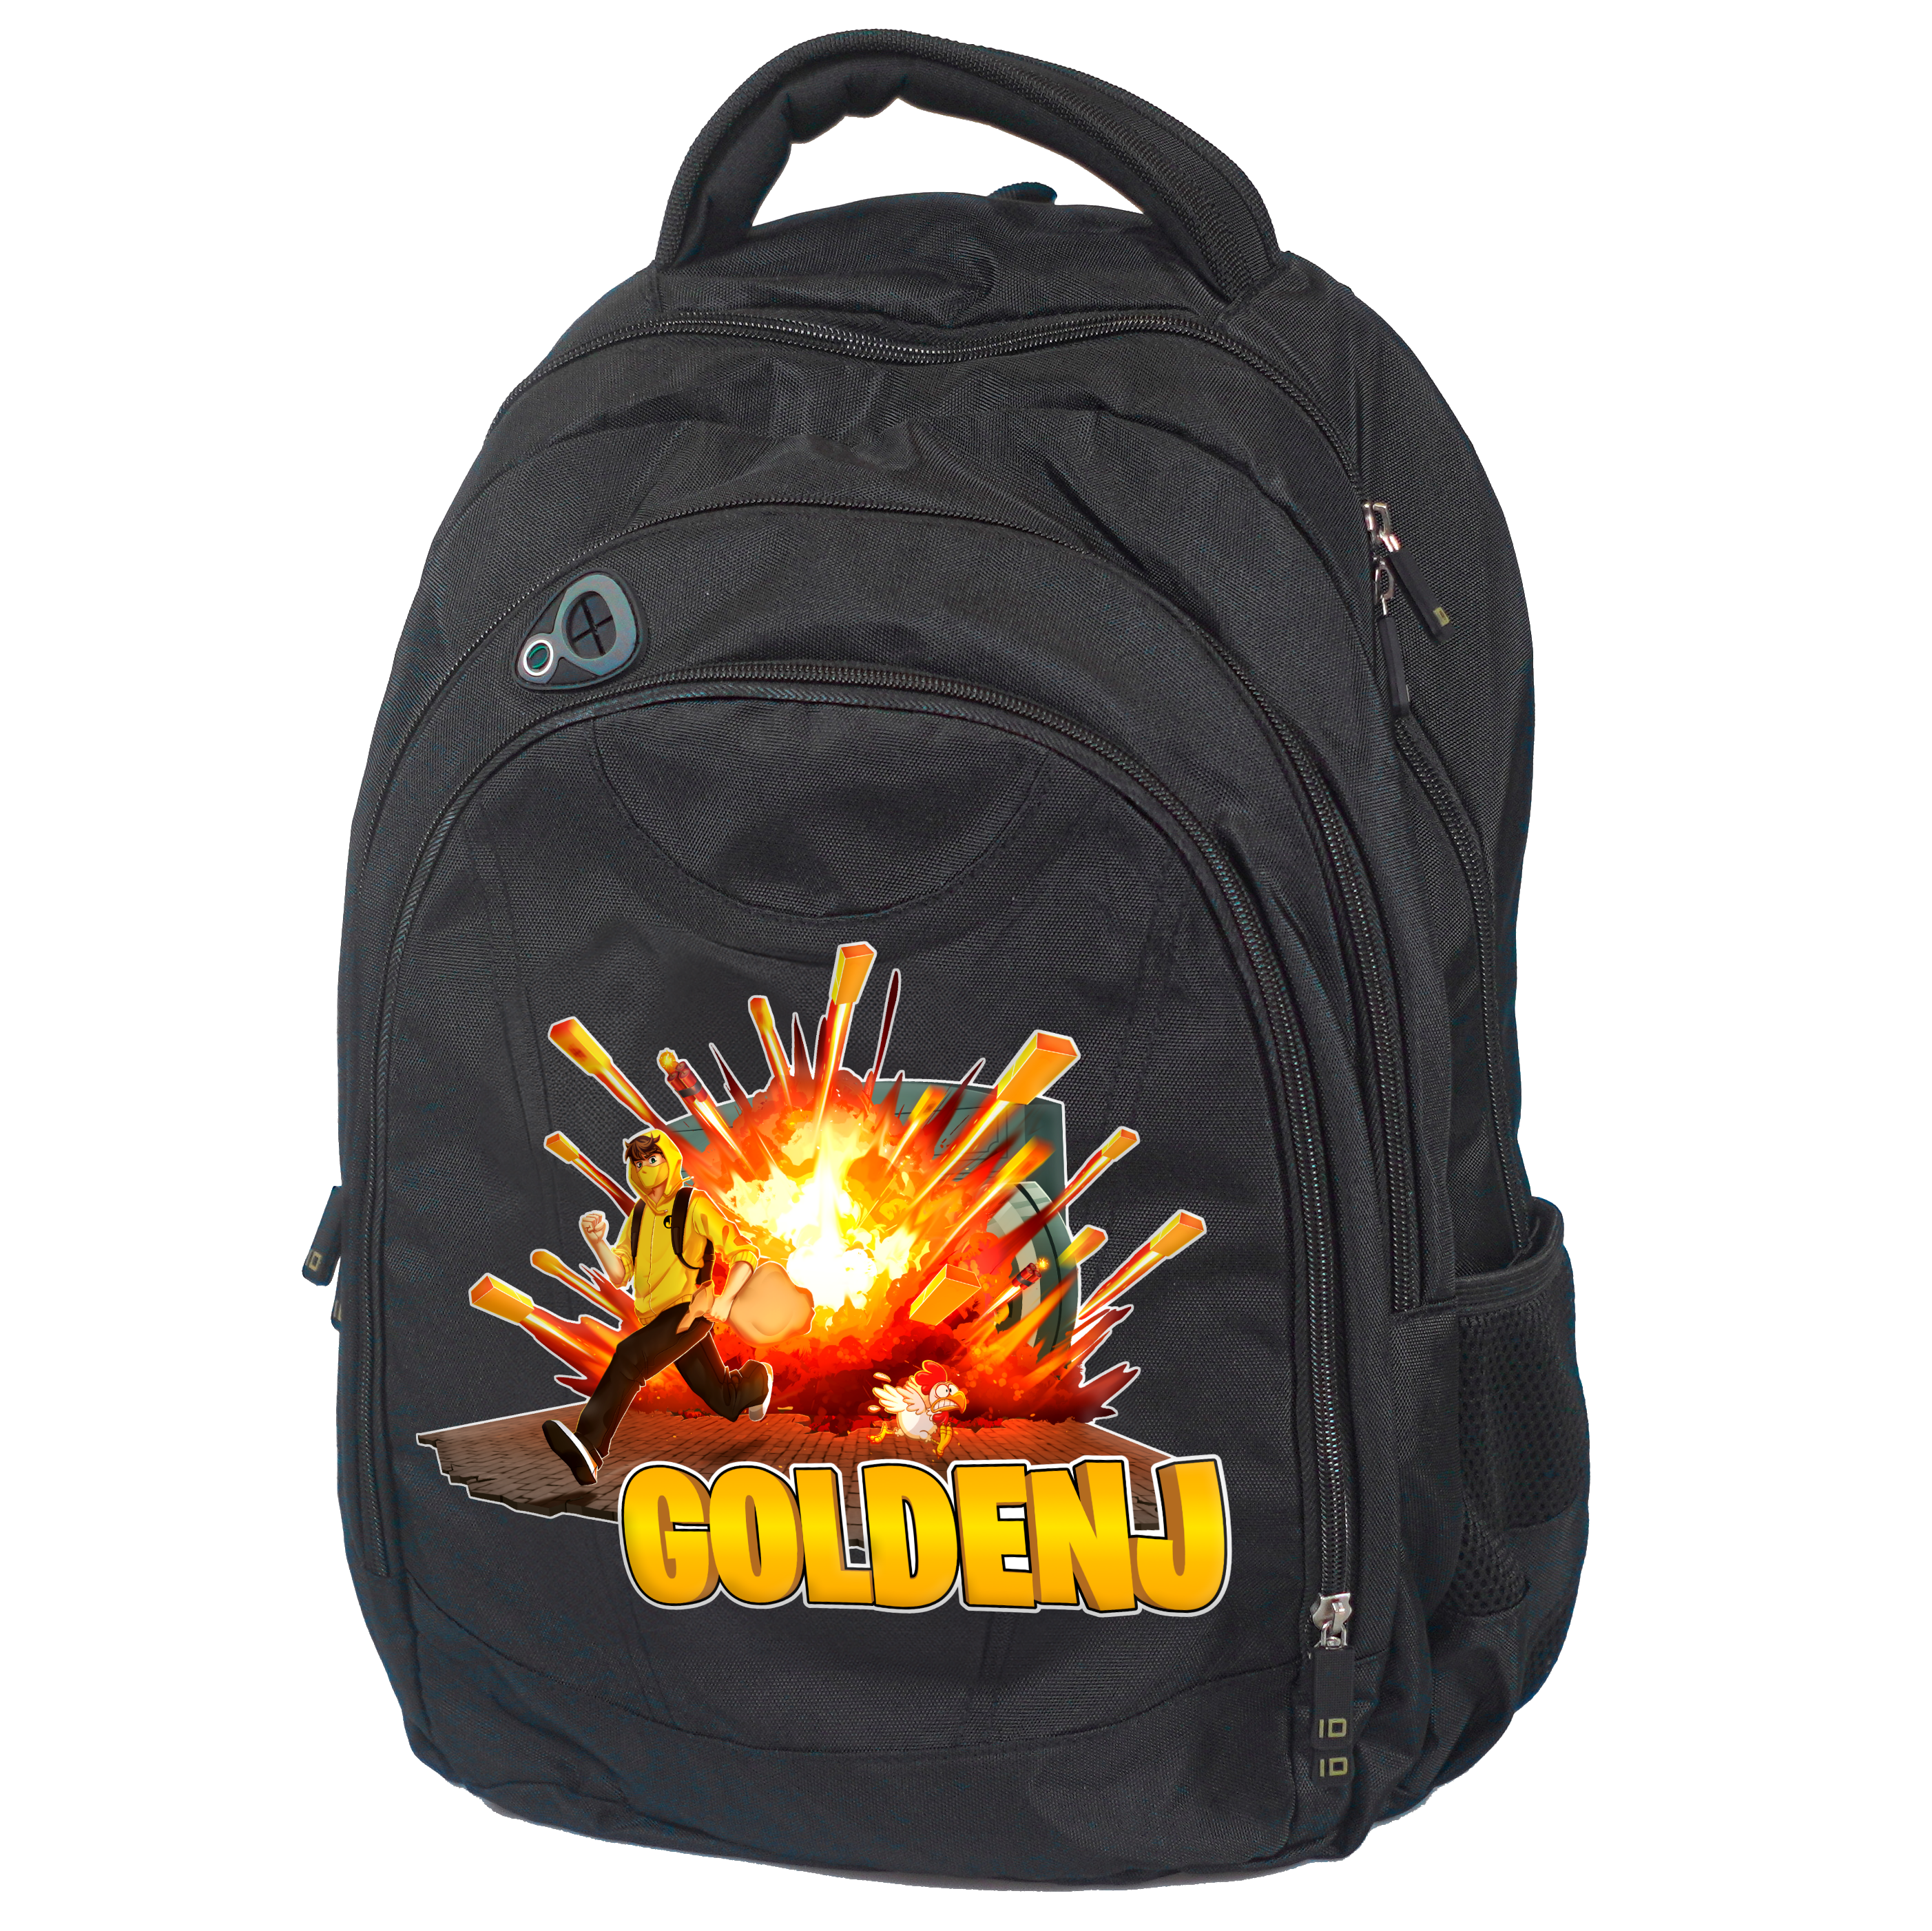 En sort rygsæk, hvor man kan se fronten, som har et GoldenJ mønster med en mand i en gul hoodie, som løber væk fra en eksplosion